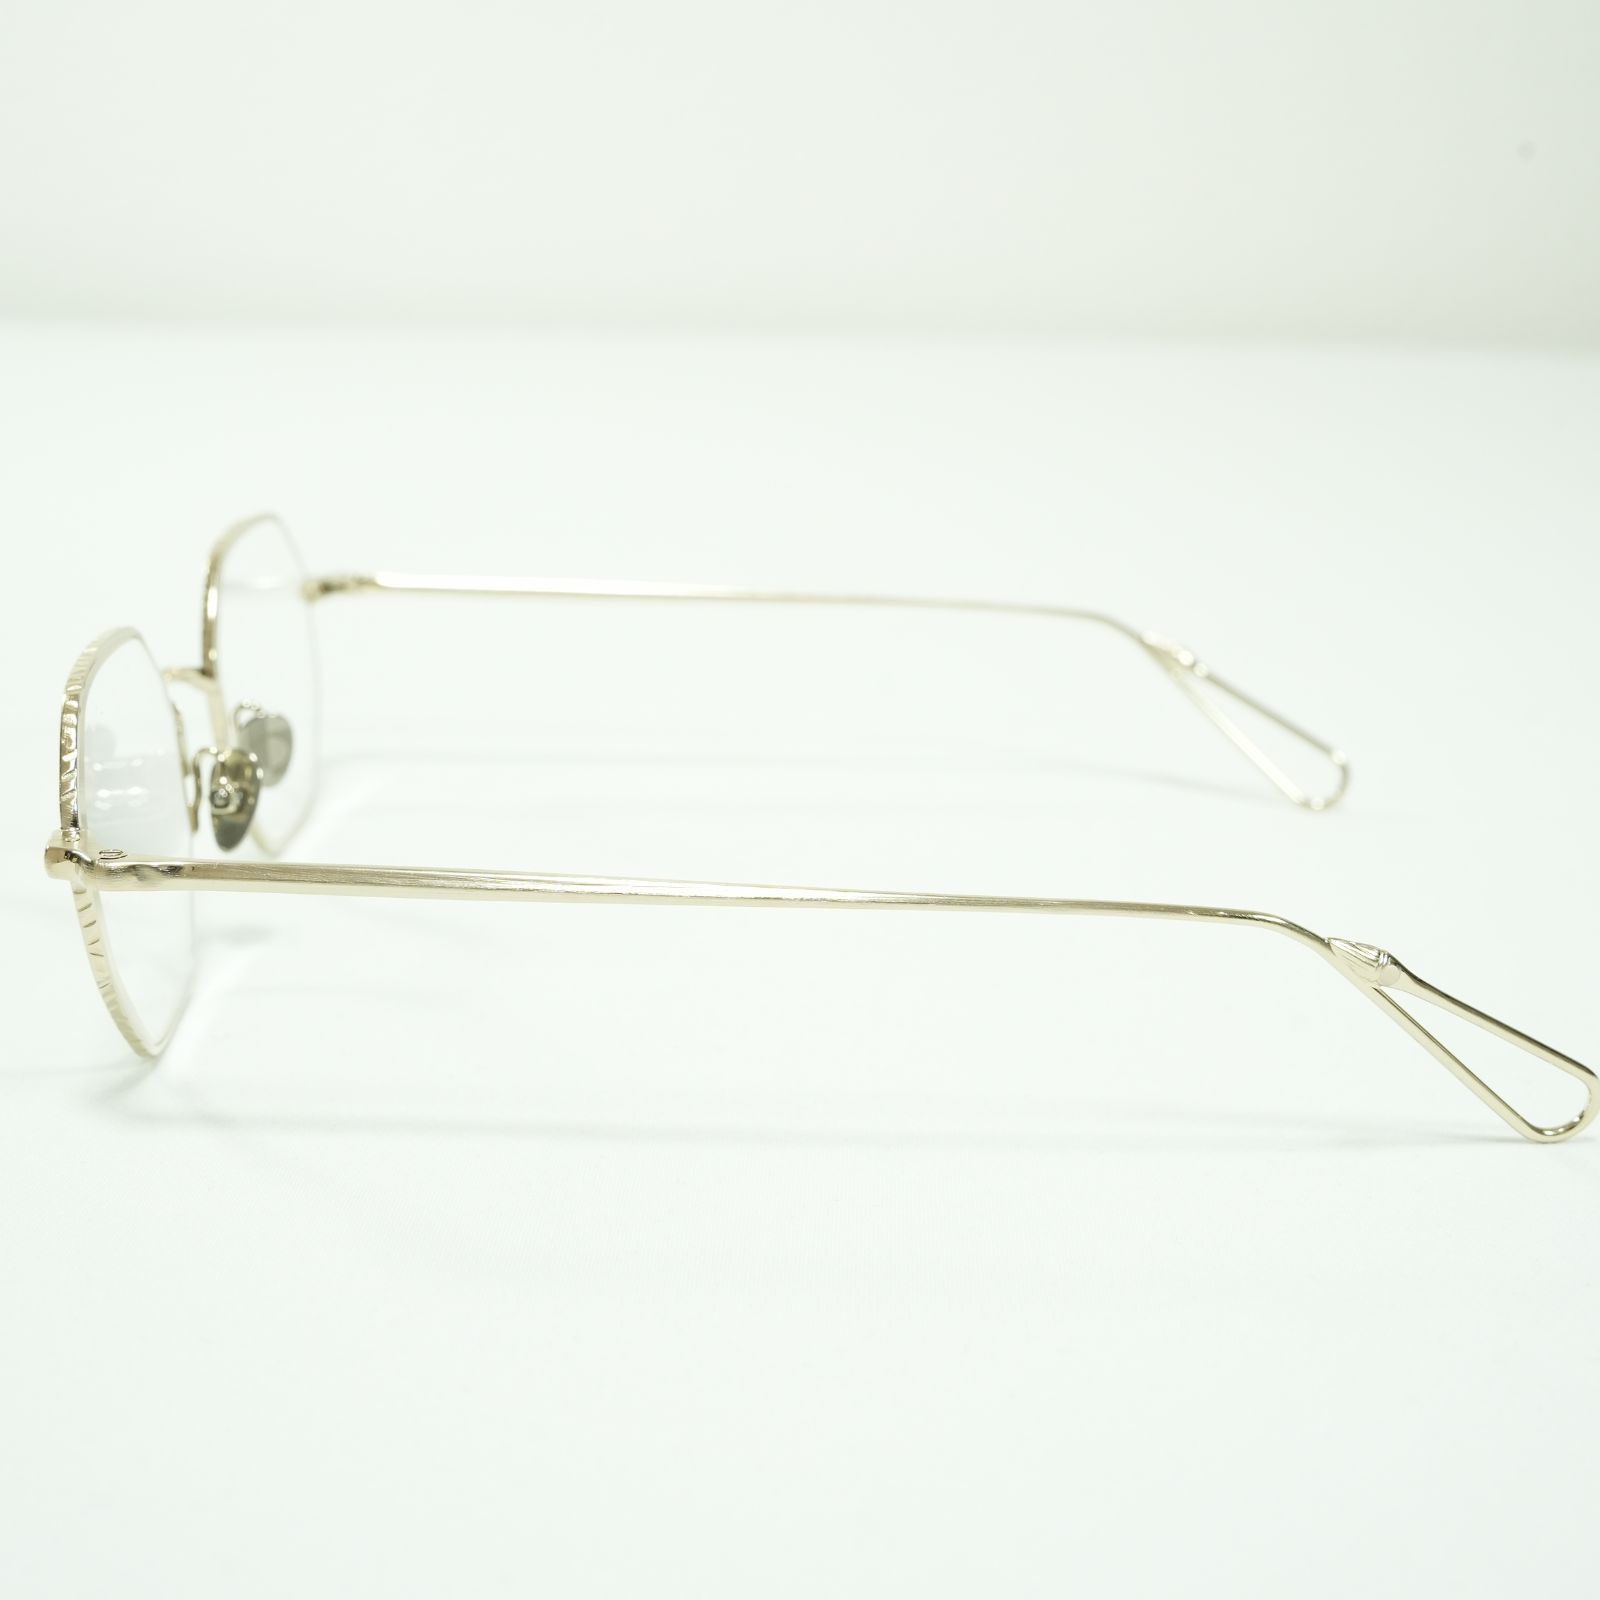 新品 AHLEM アーレム GAILLON gray gold メタル 手作り フランス製 メガネ 眼鏡